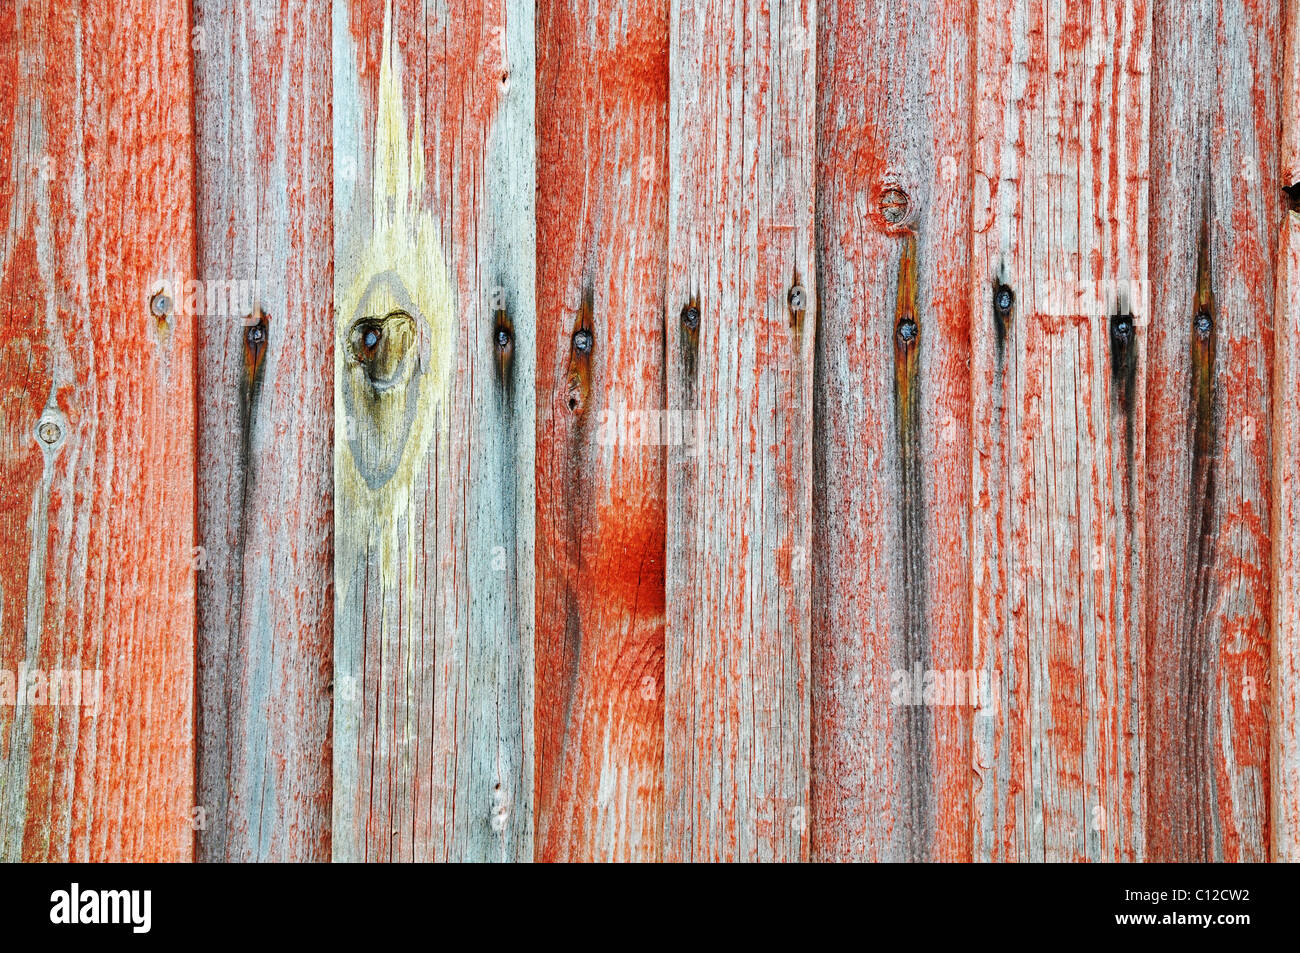 Détail d'arrière-plan d'une clôture en bois rouge et gris Banque D'Images